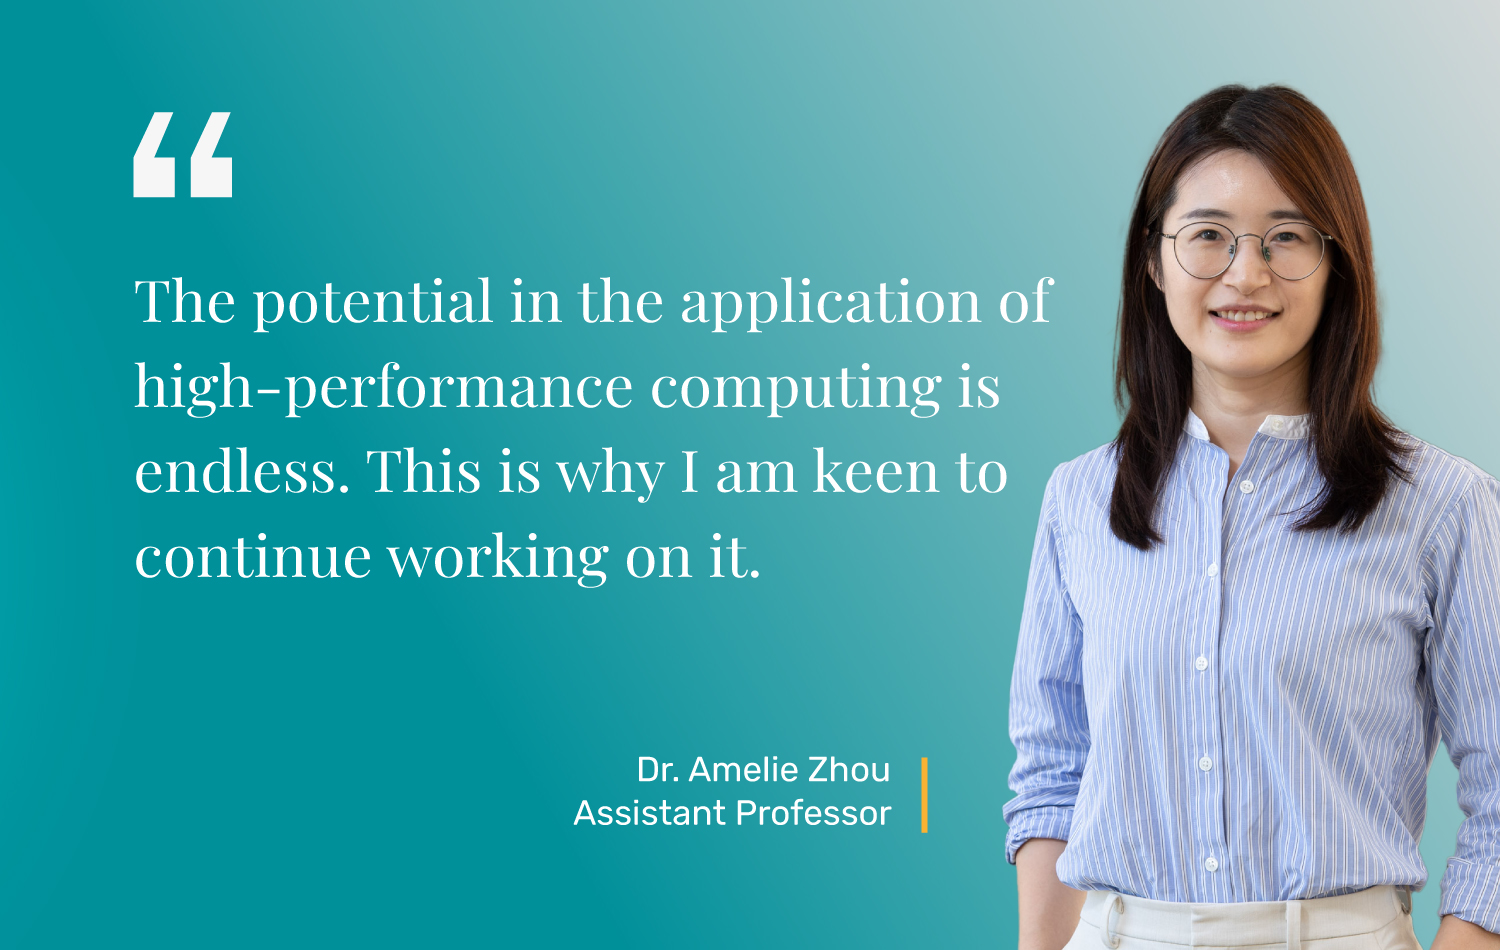 Dr. Amelie Zhou